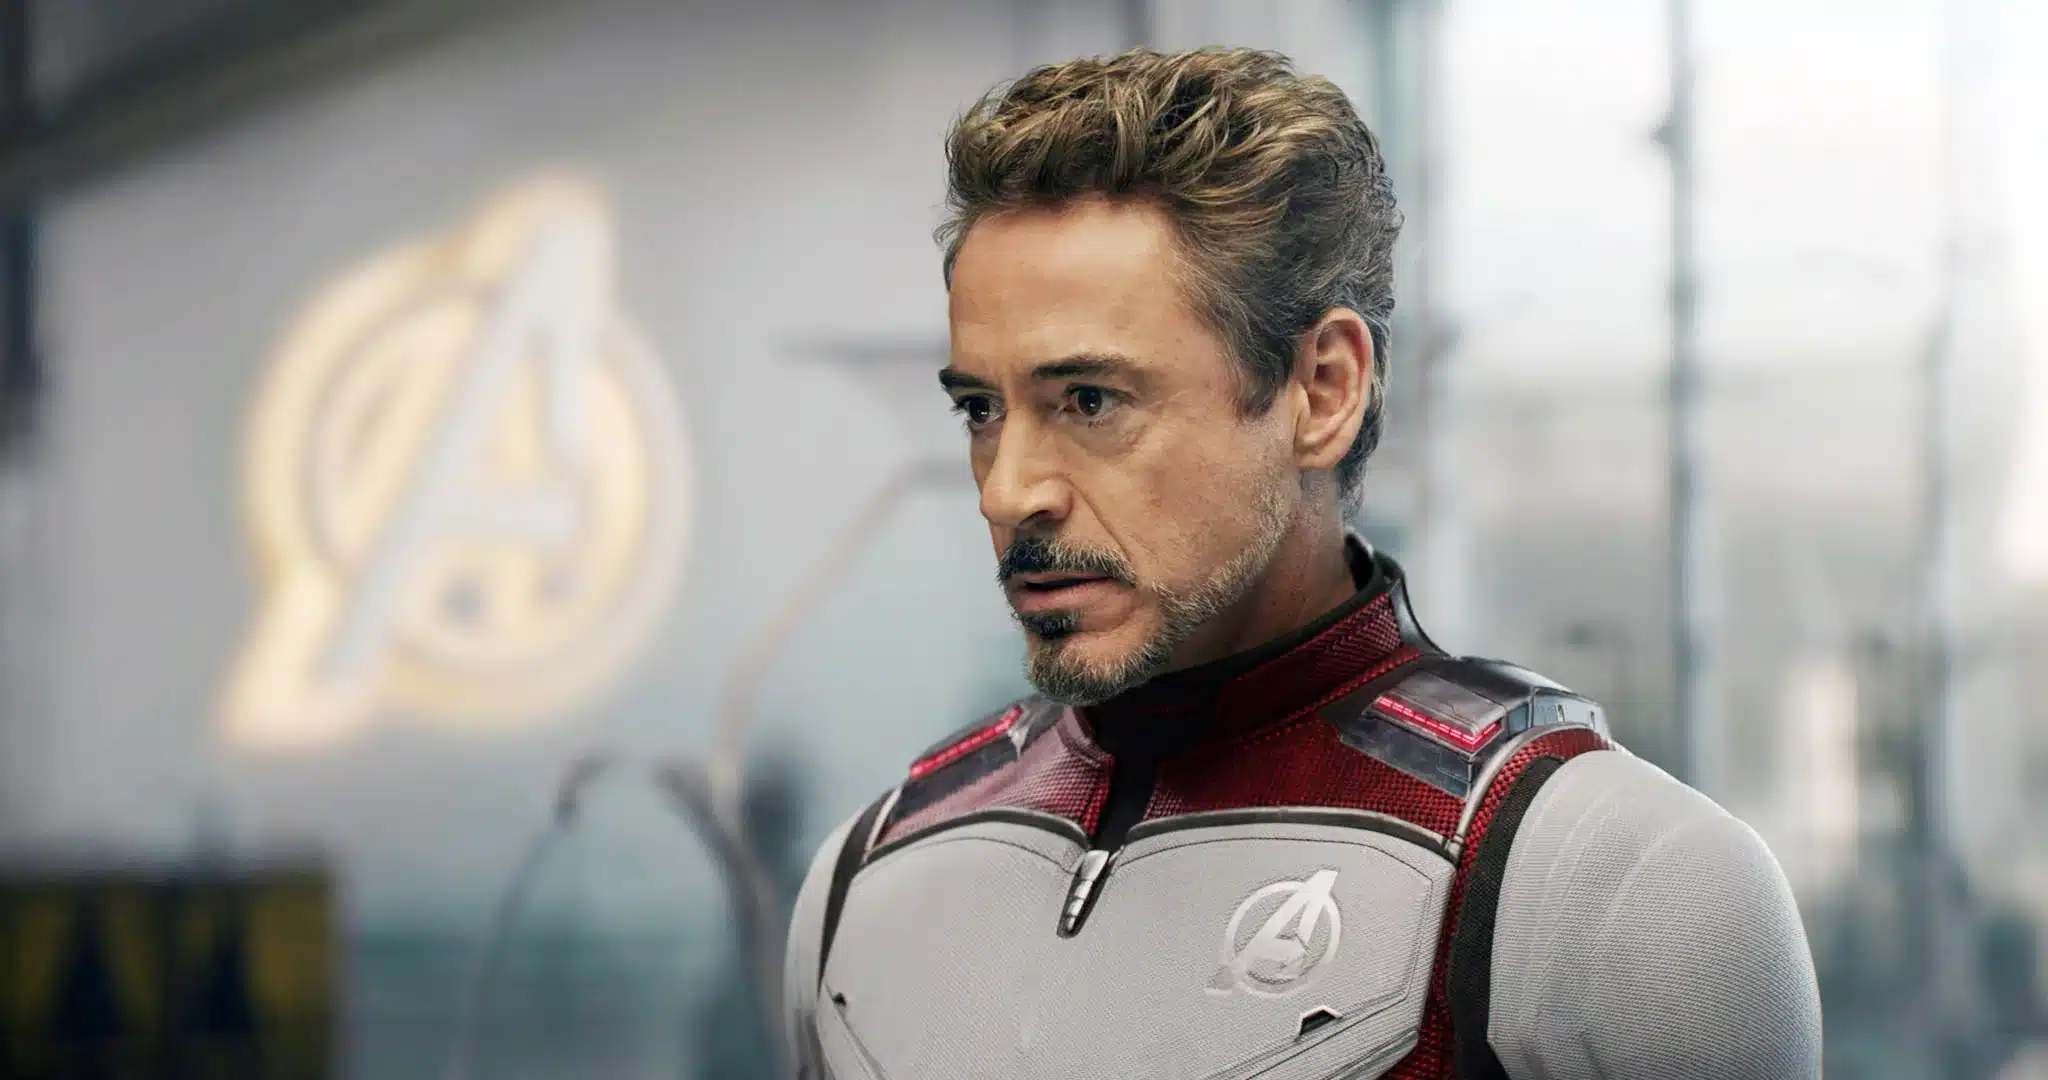 Avengers 5 Release Date - Tony Stark from Avengers